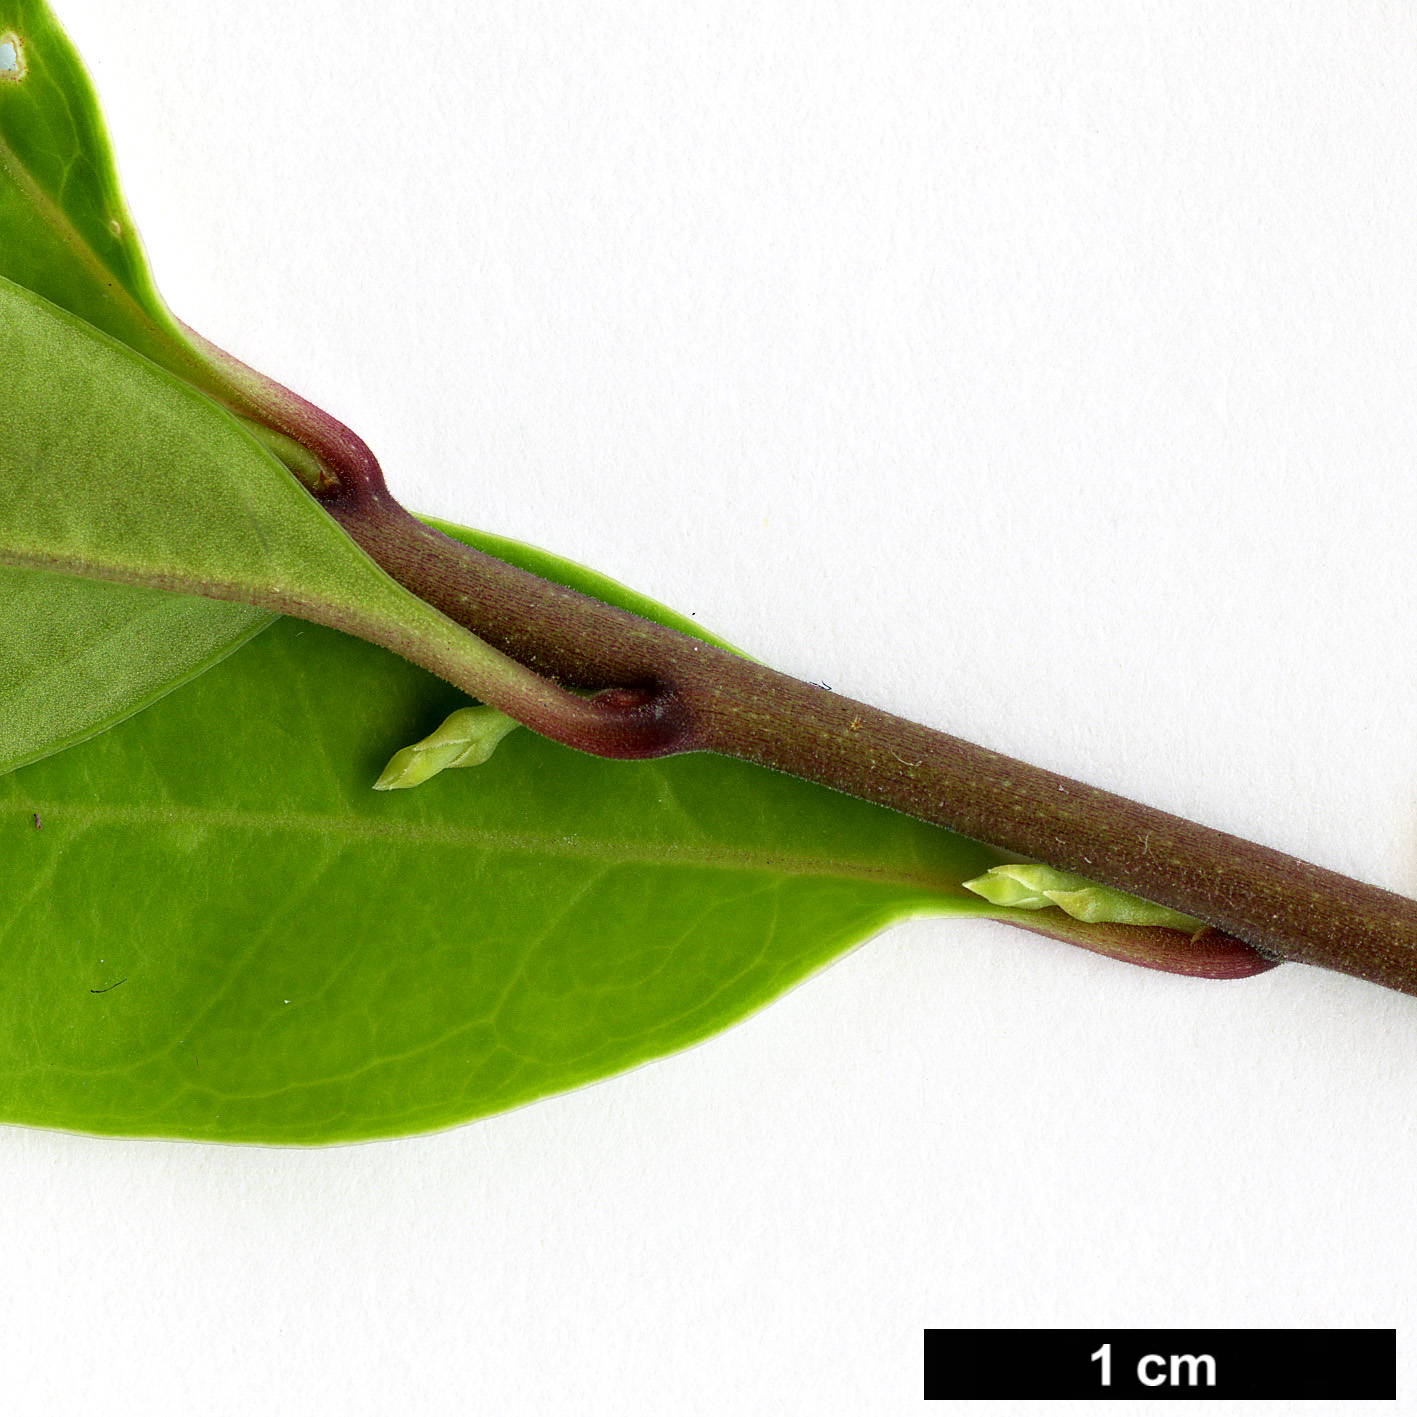 High resolution image: Family: Buxaceae - Genus: Sarcococca - Taxon: bleddynii